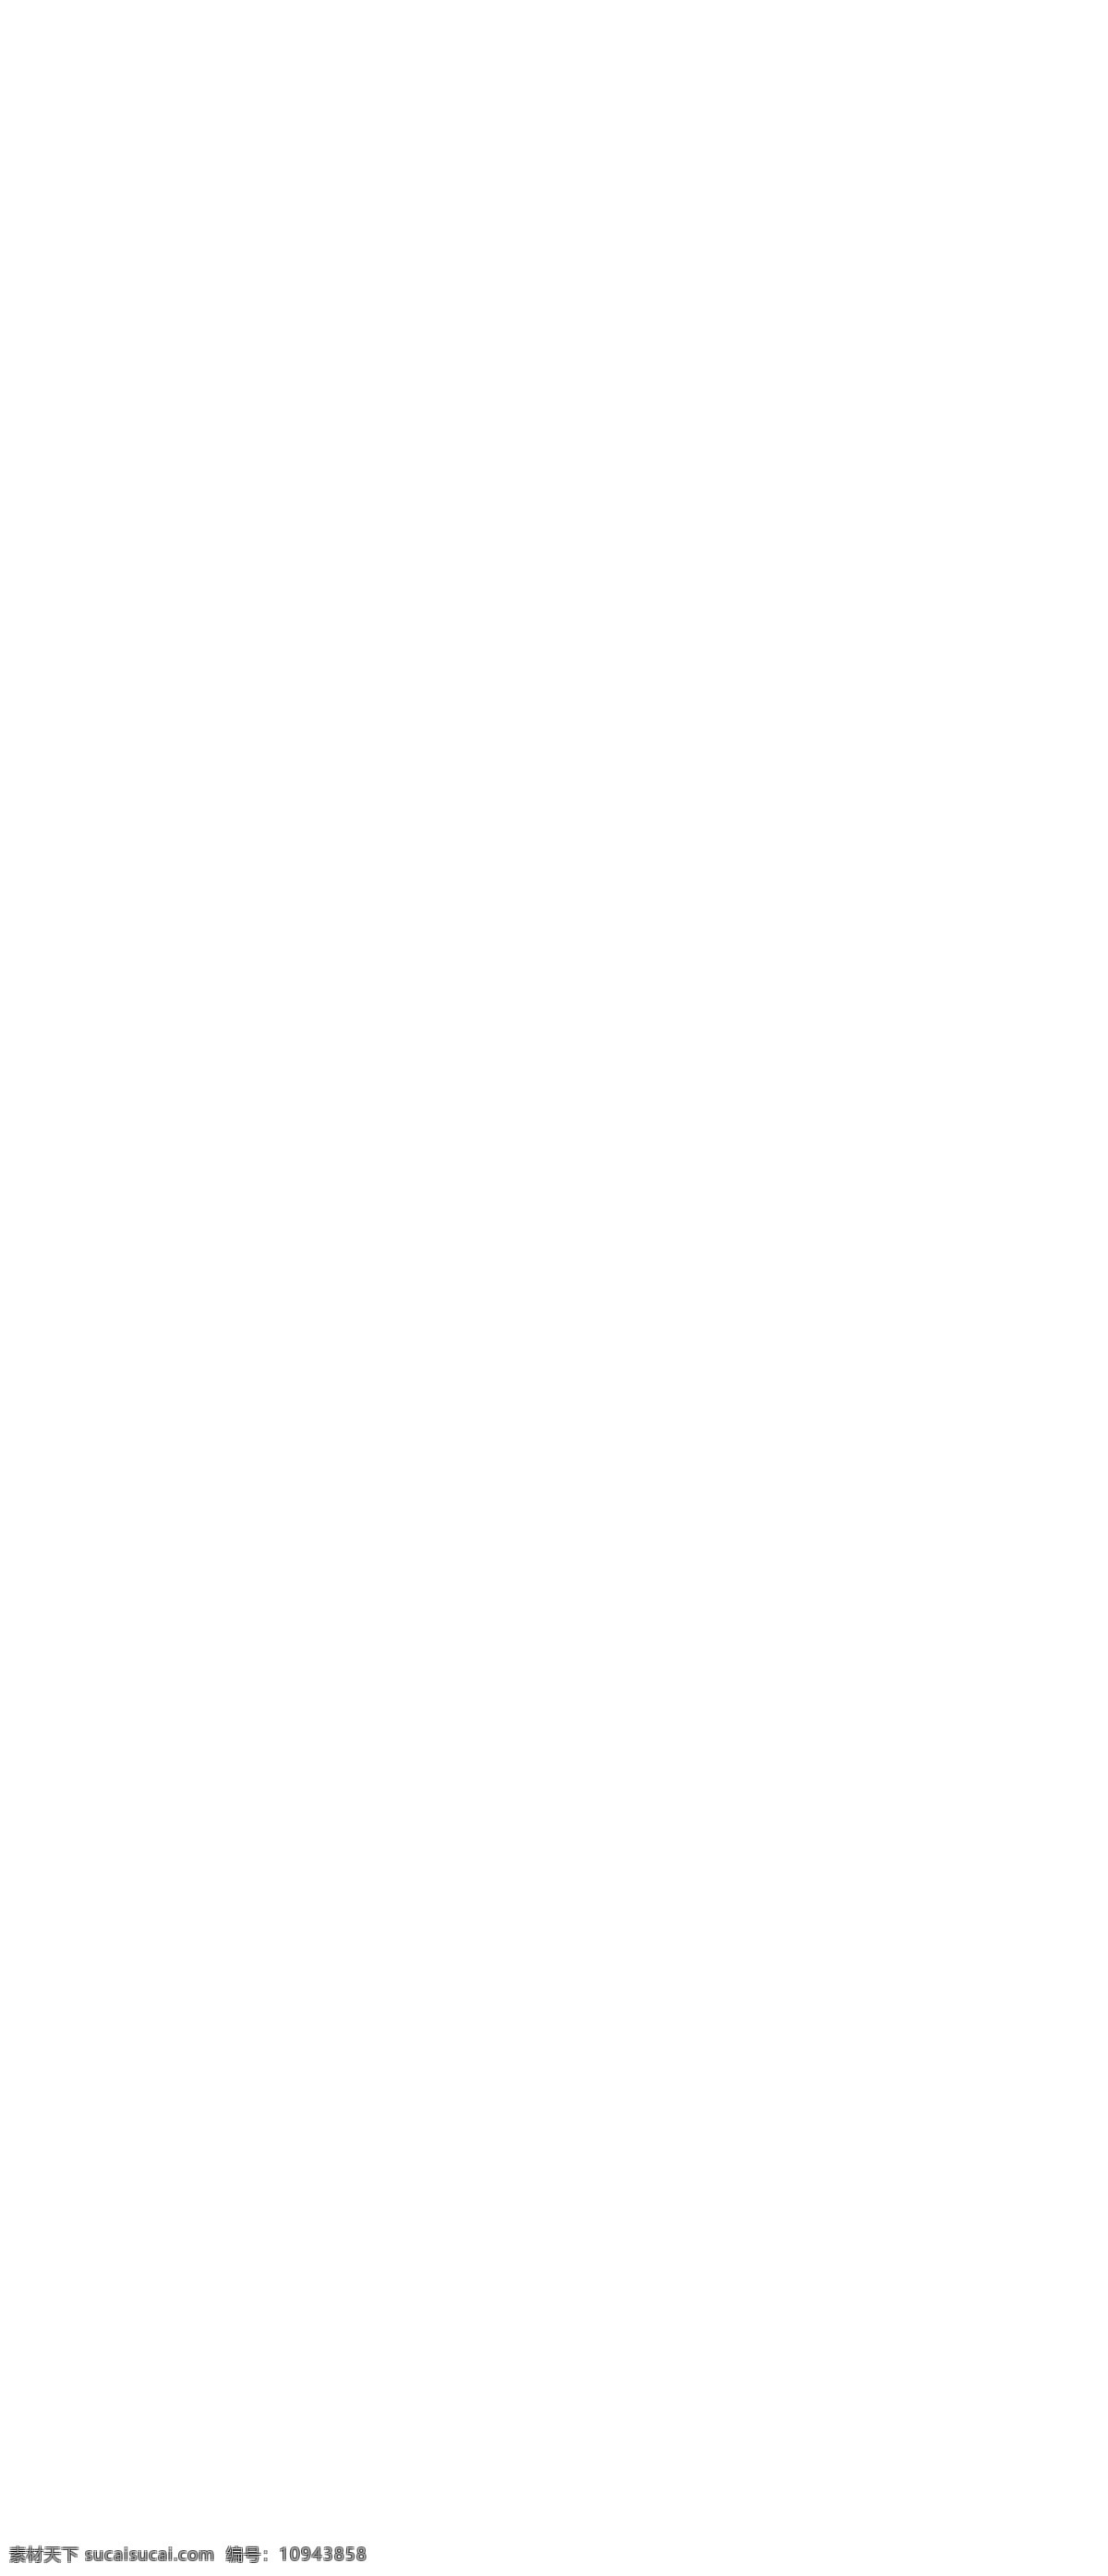 潮流 女性 服饰 网店 模板 下 ui设计 版式设计 界面设计 网页版式 网站菜单 网站 分层 女装 页面 网站焦点图 韩国服饰网店 psd源文件